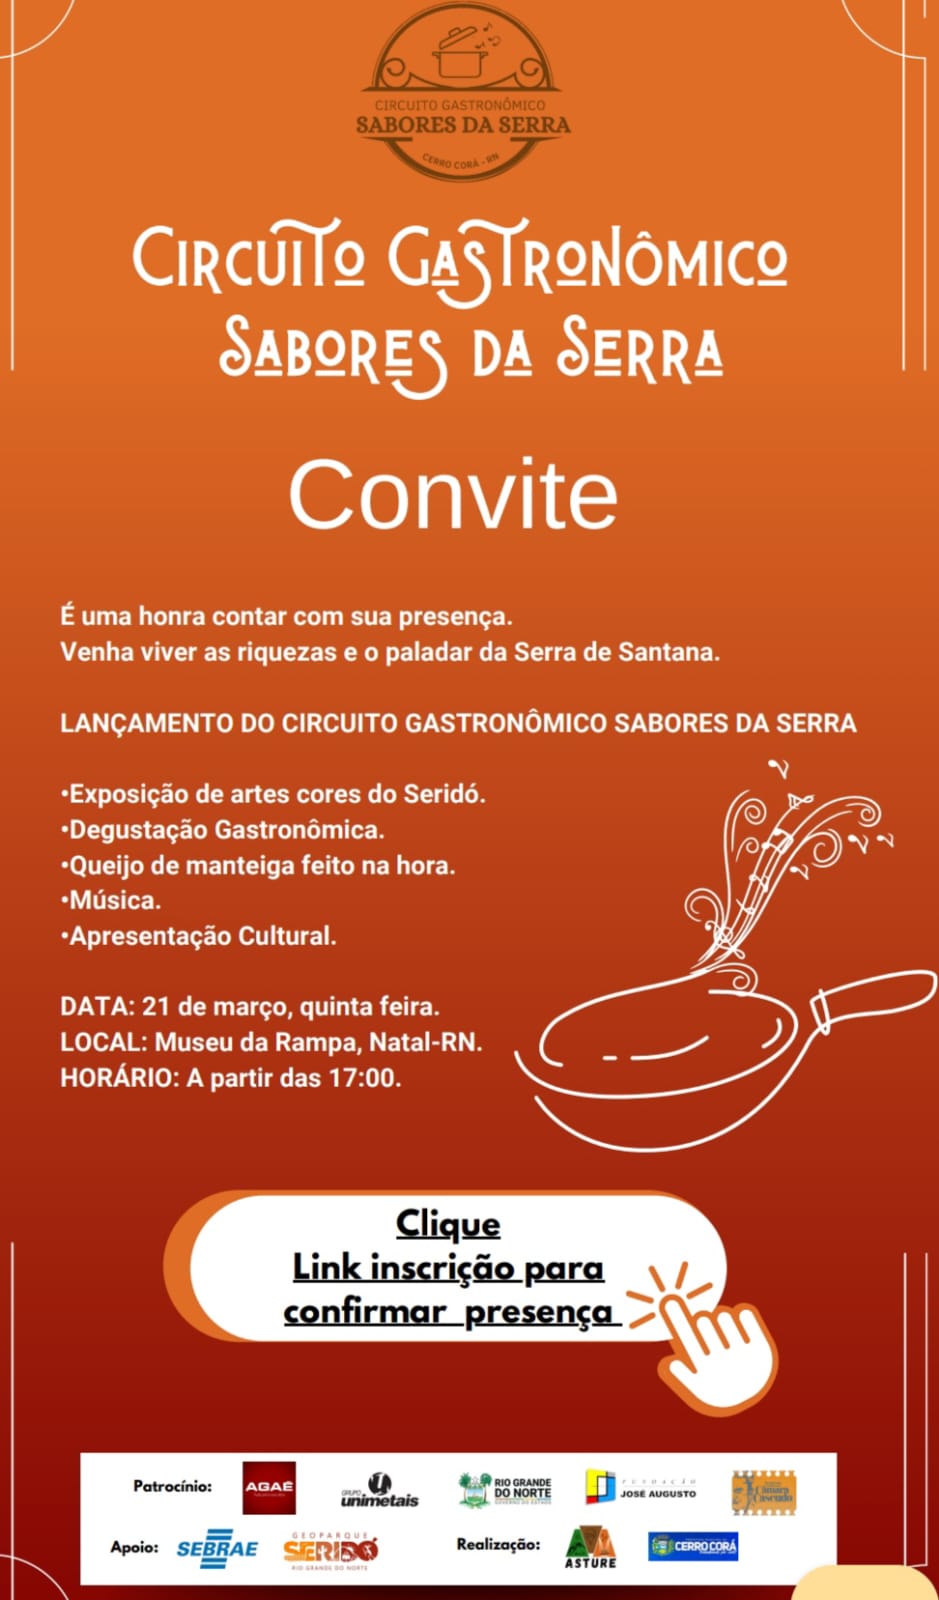 Lançamento do Circuito Gastronômico Sabores da Serra acontece quinta-feira 21 de março. Museu da Rampa em Natal-RN